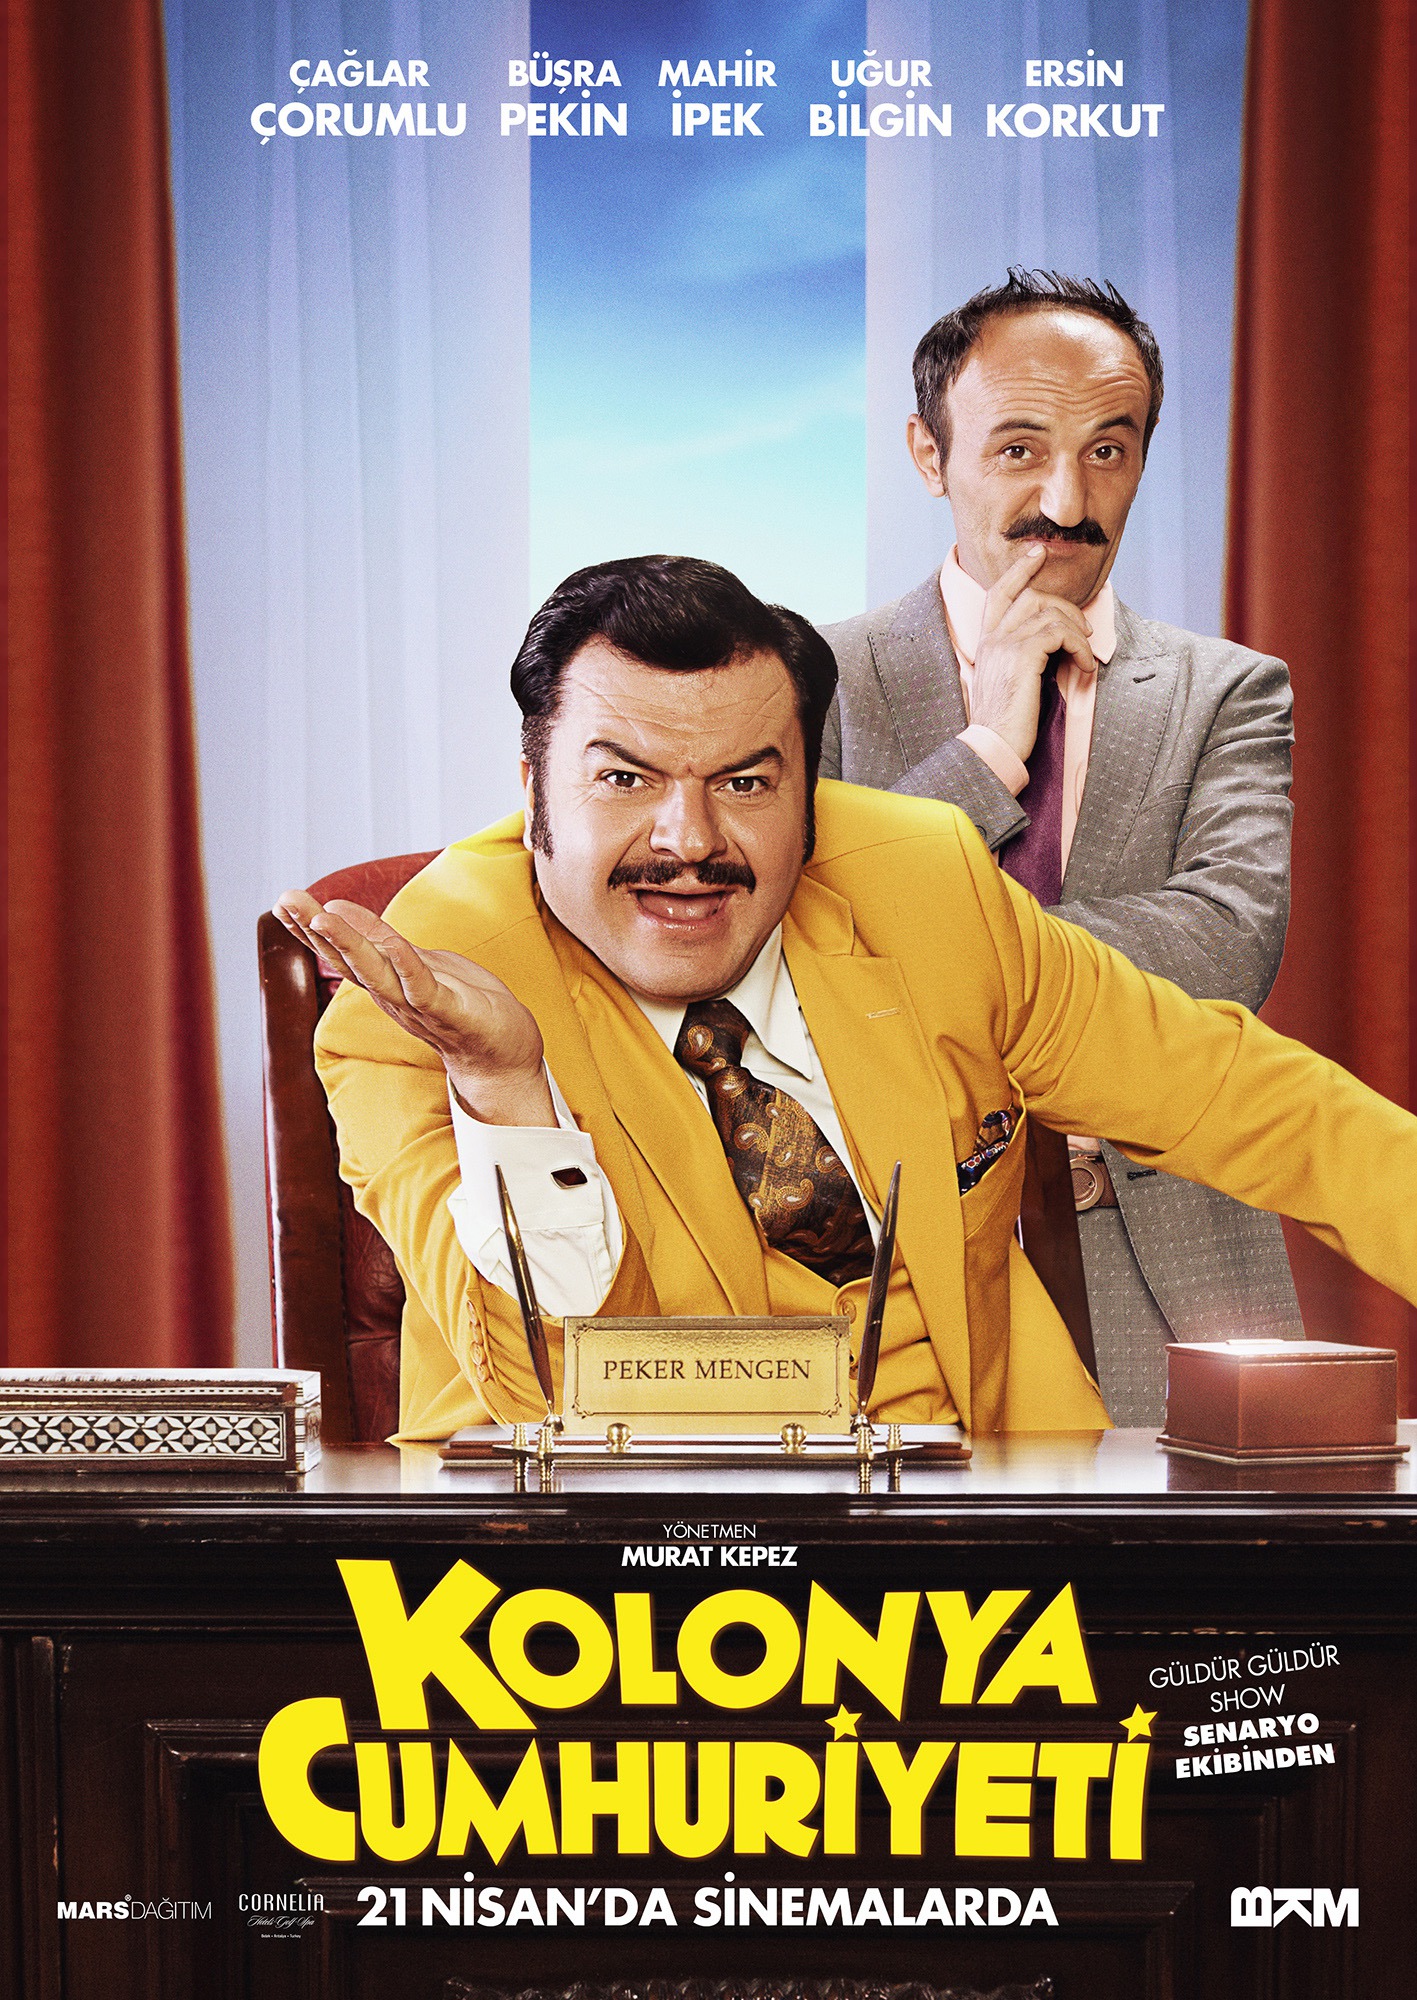 Mega Sized Movie Poster Image for Kolonya Cumhuriyeti (#6 of 7)